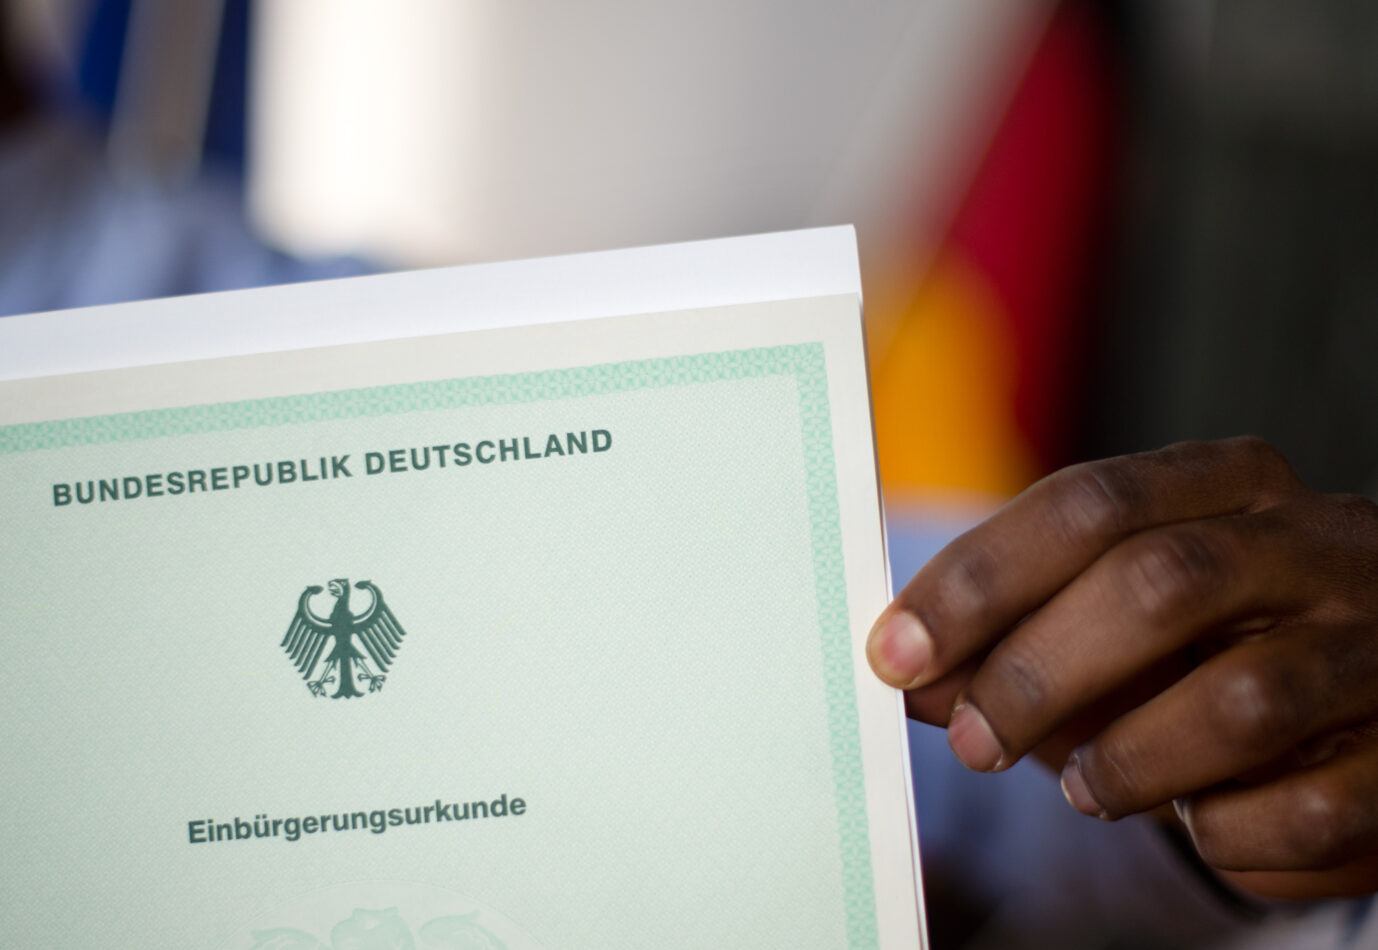  Nach dem Willen der Ampelkoalition sollen Einwanderer schneller die deutsche Staatsbürgerschaft erhalten können und so Teil des deutschen Volkes werden